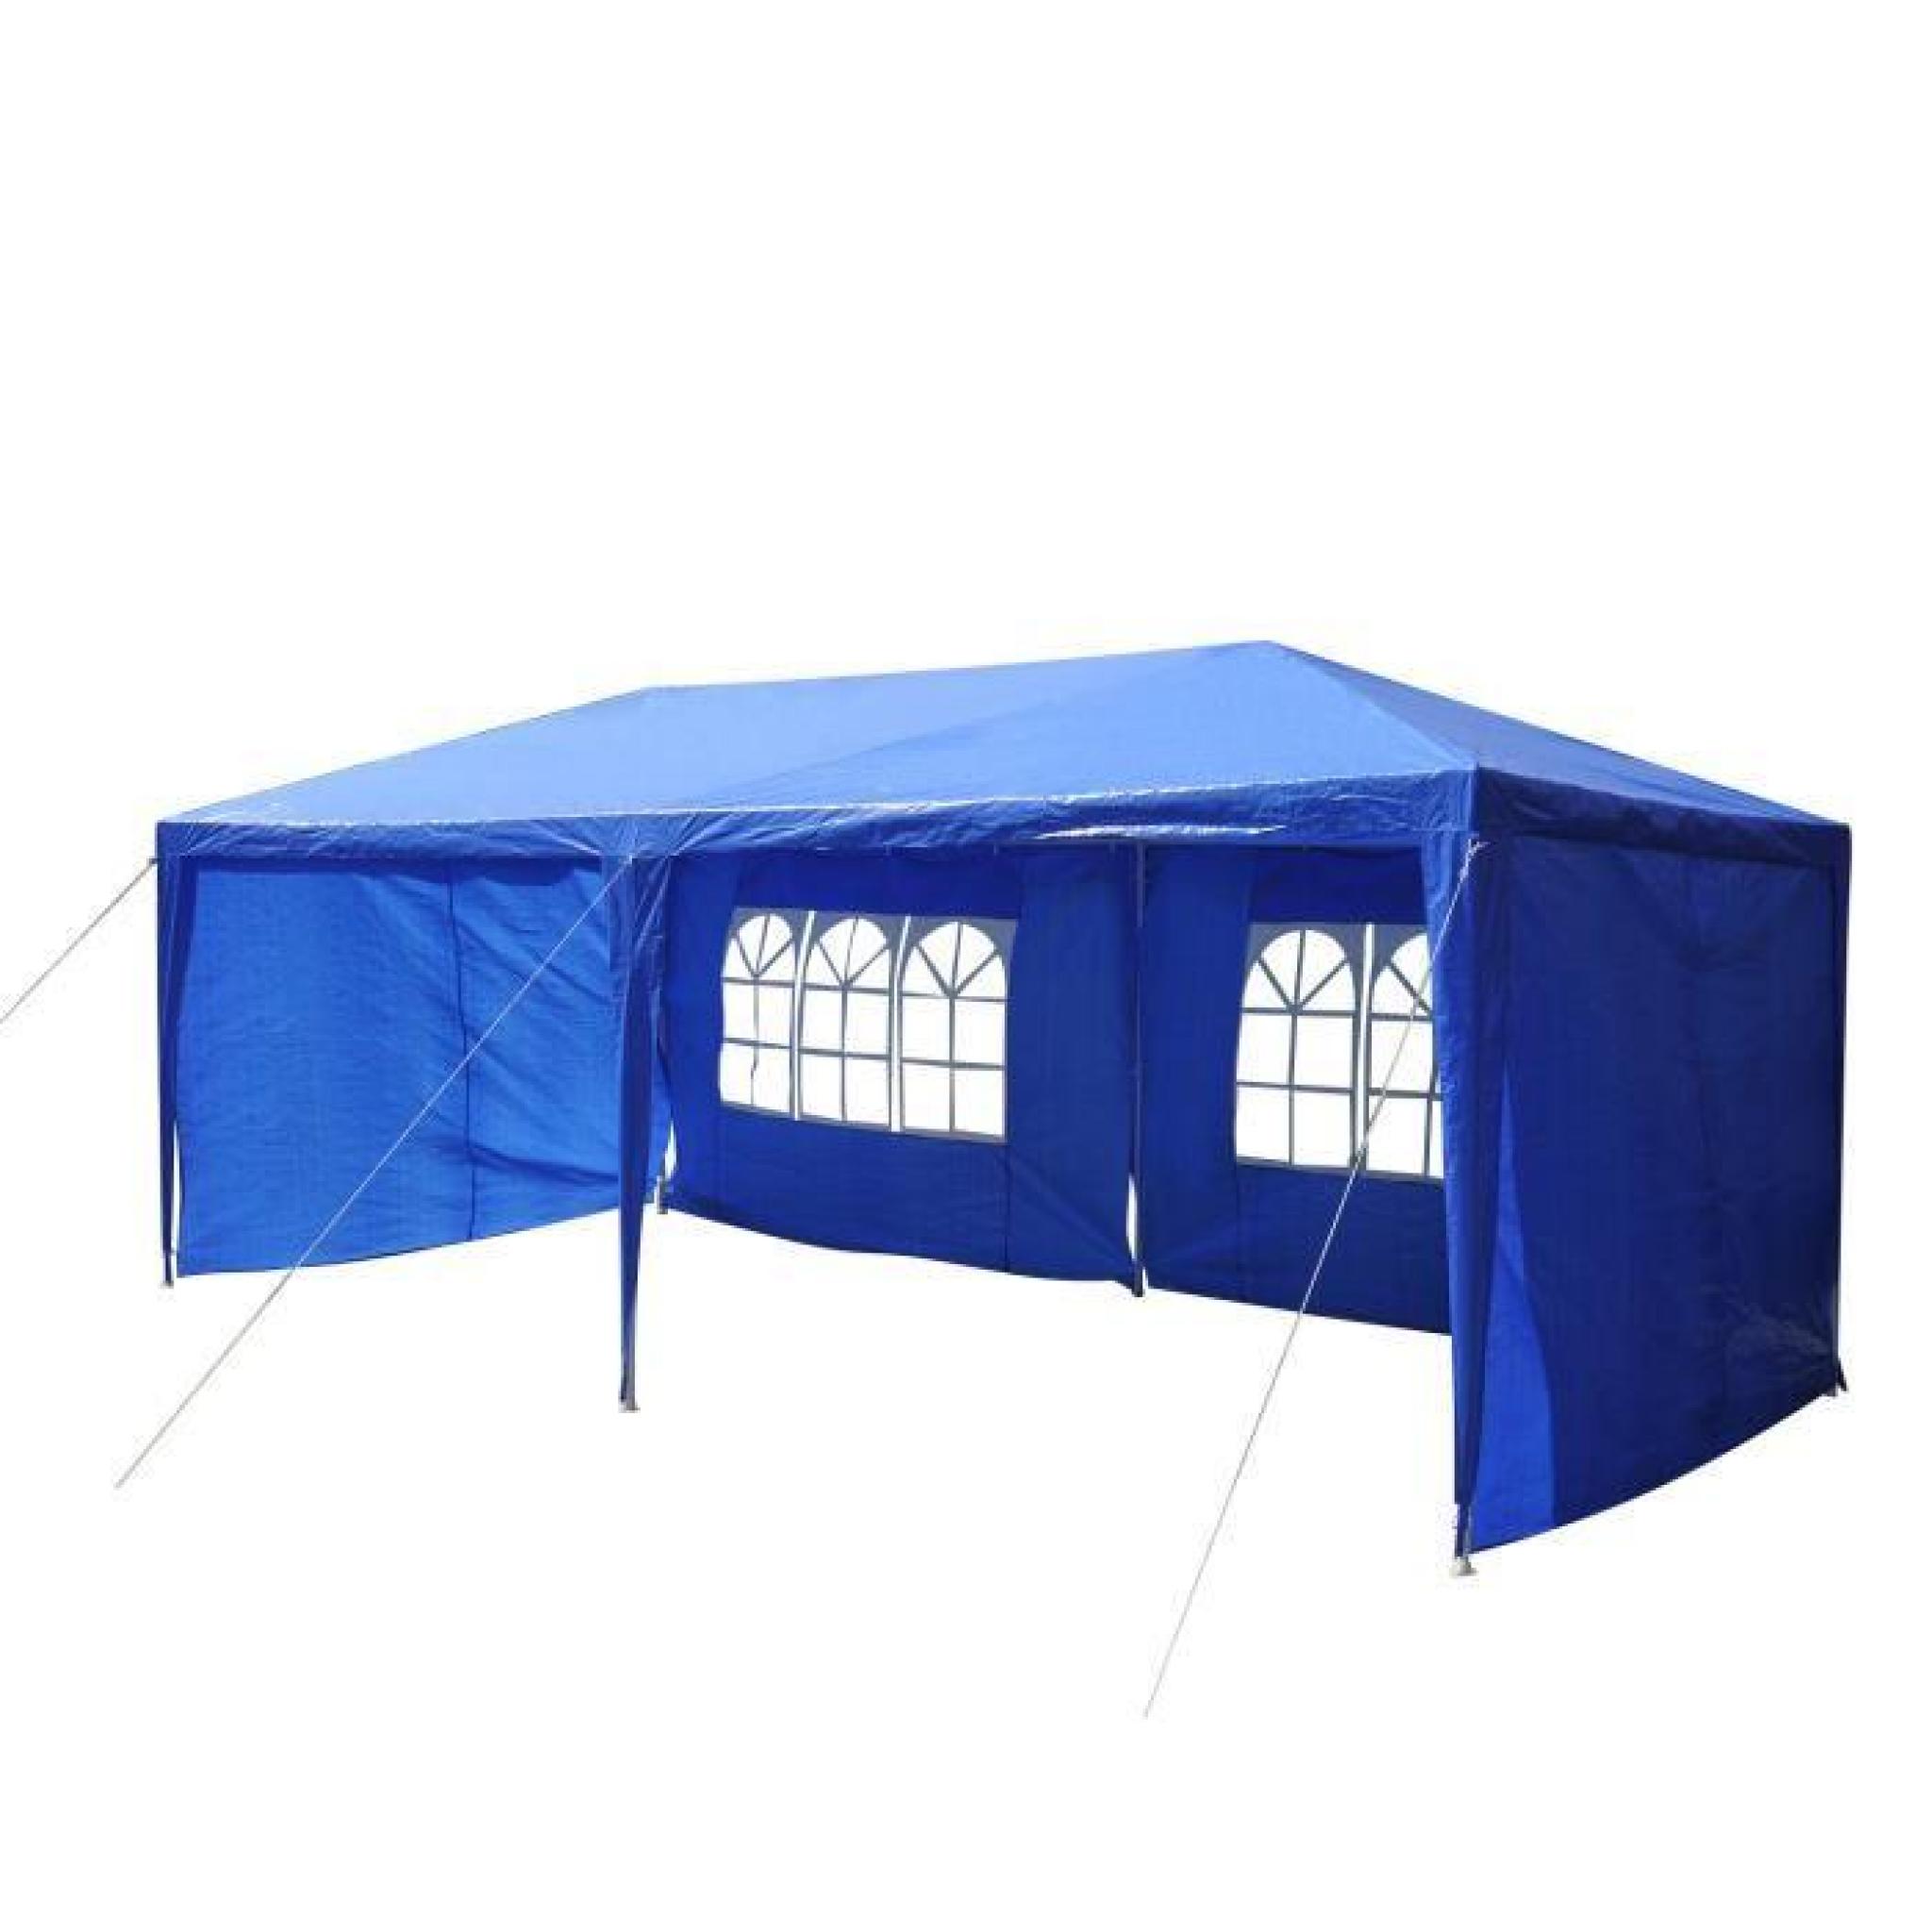 Outsunny Tonnelle Tente de Jardin Chapiteau de Réception Imperméable 6x3x2.55m Bleu pas cher